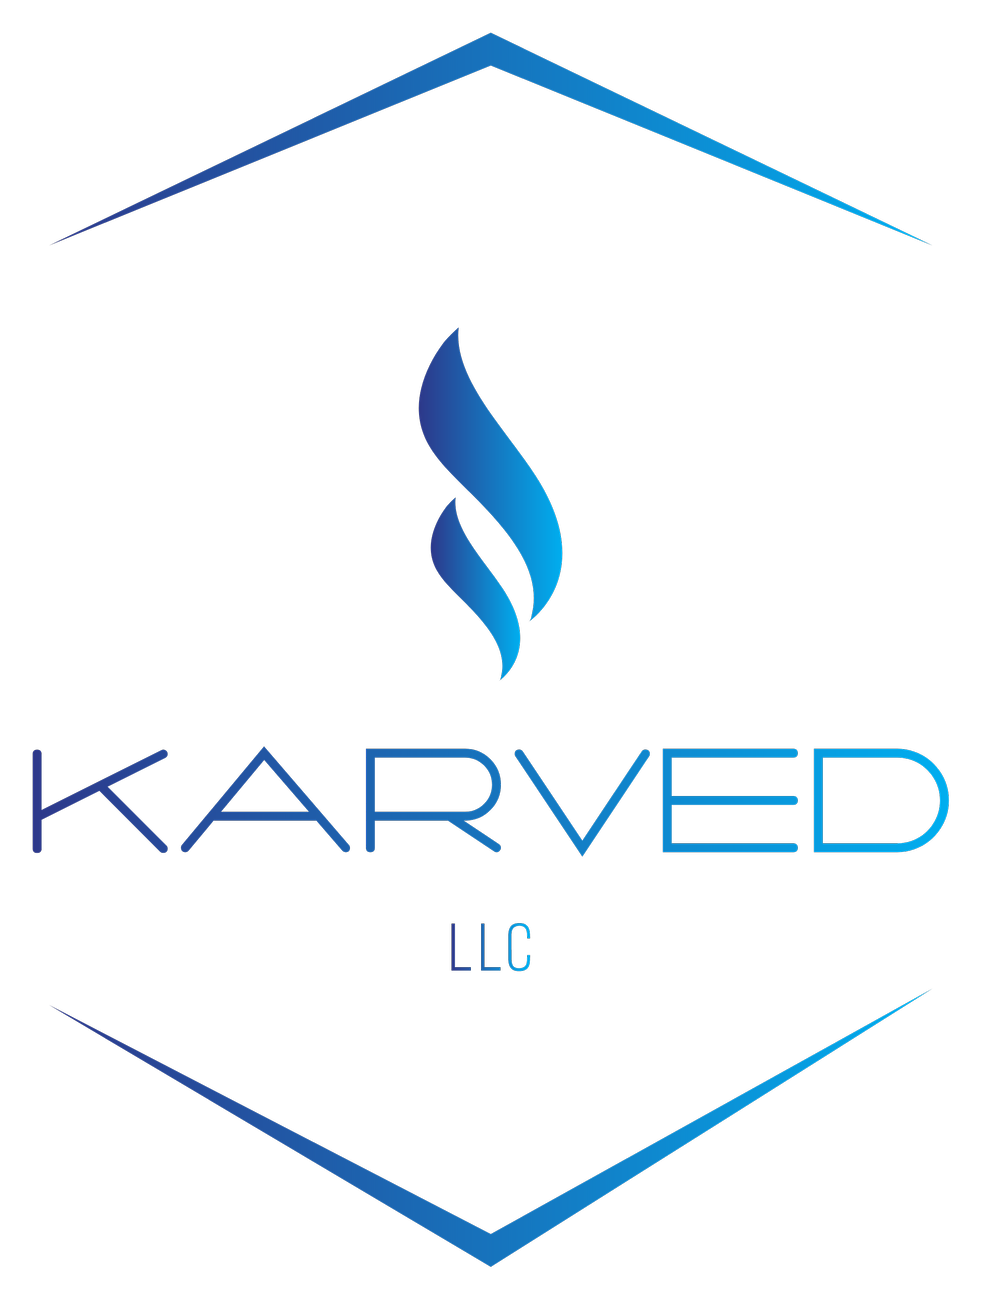 Karved LLC